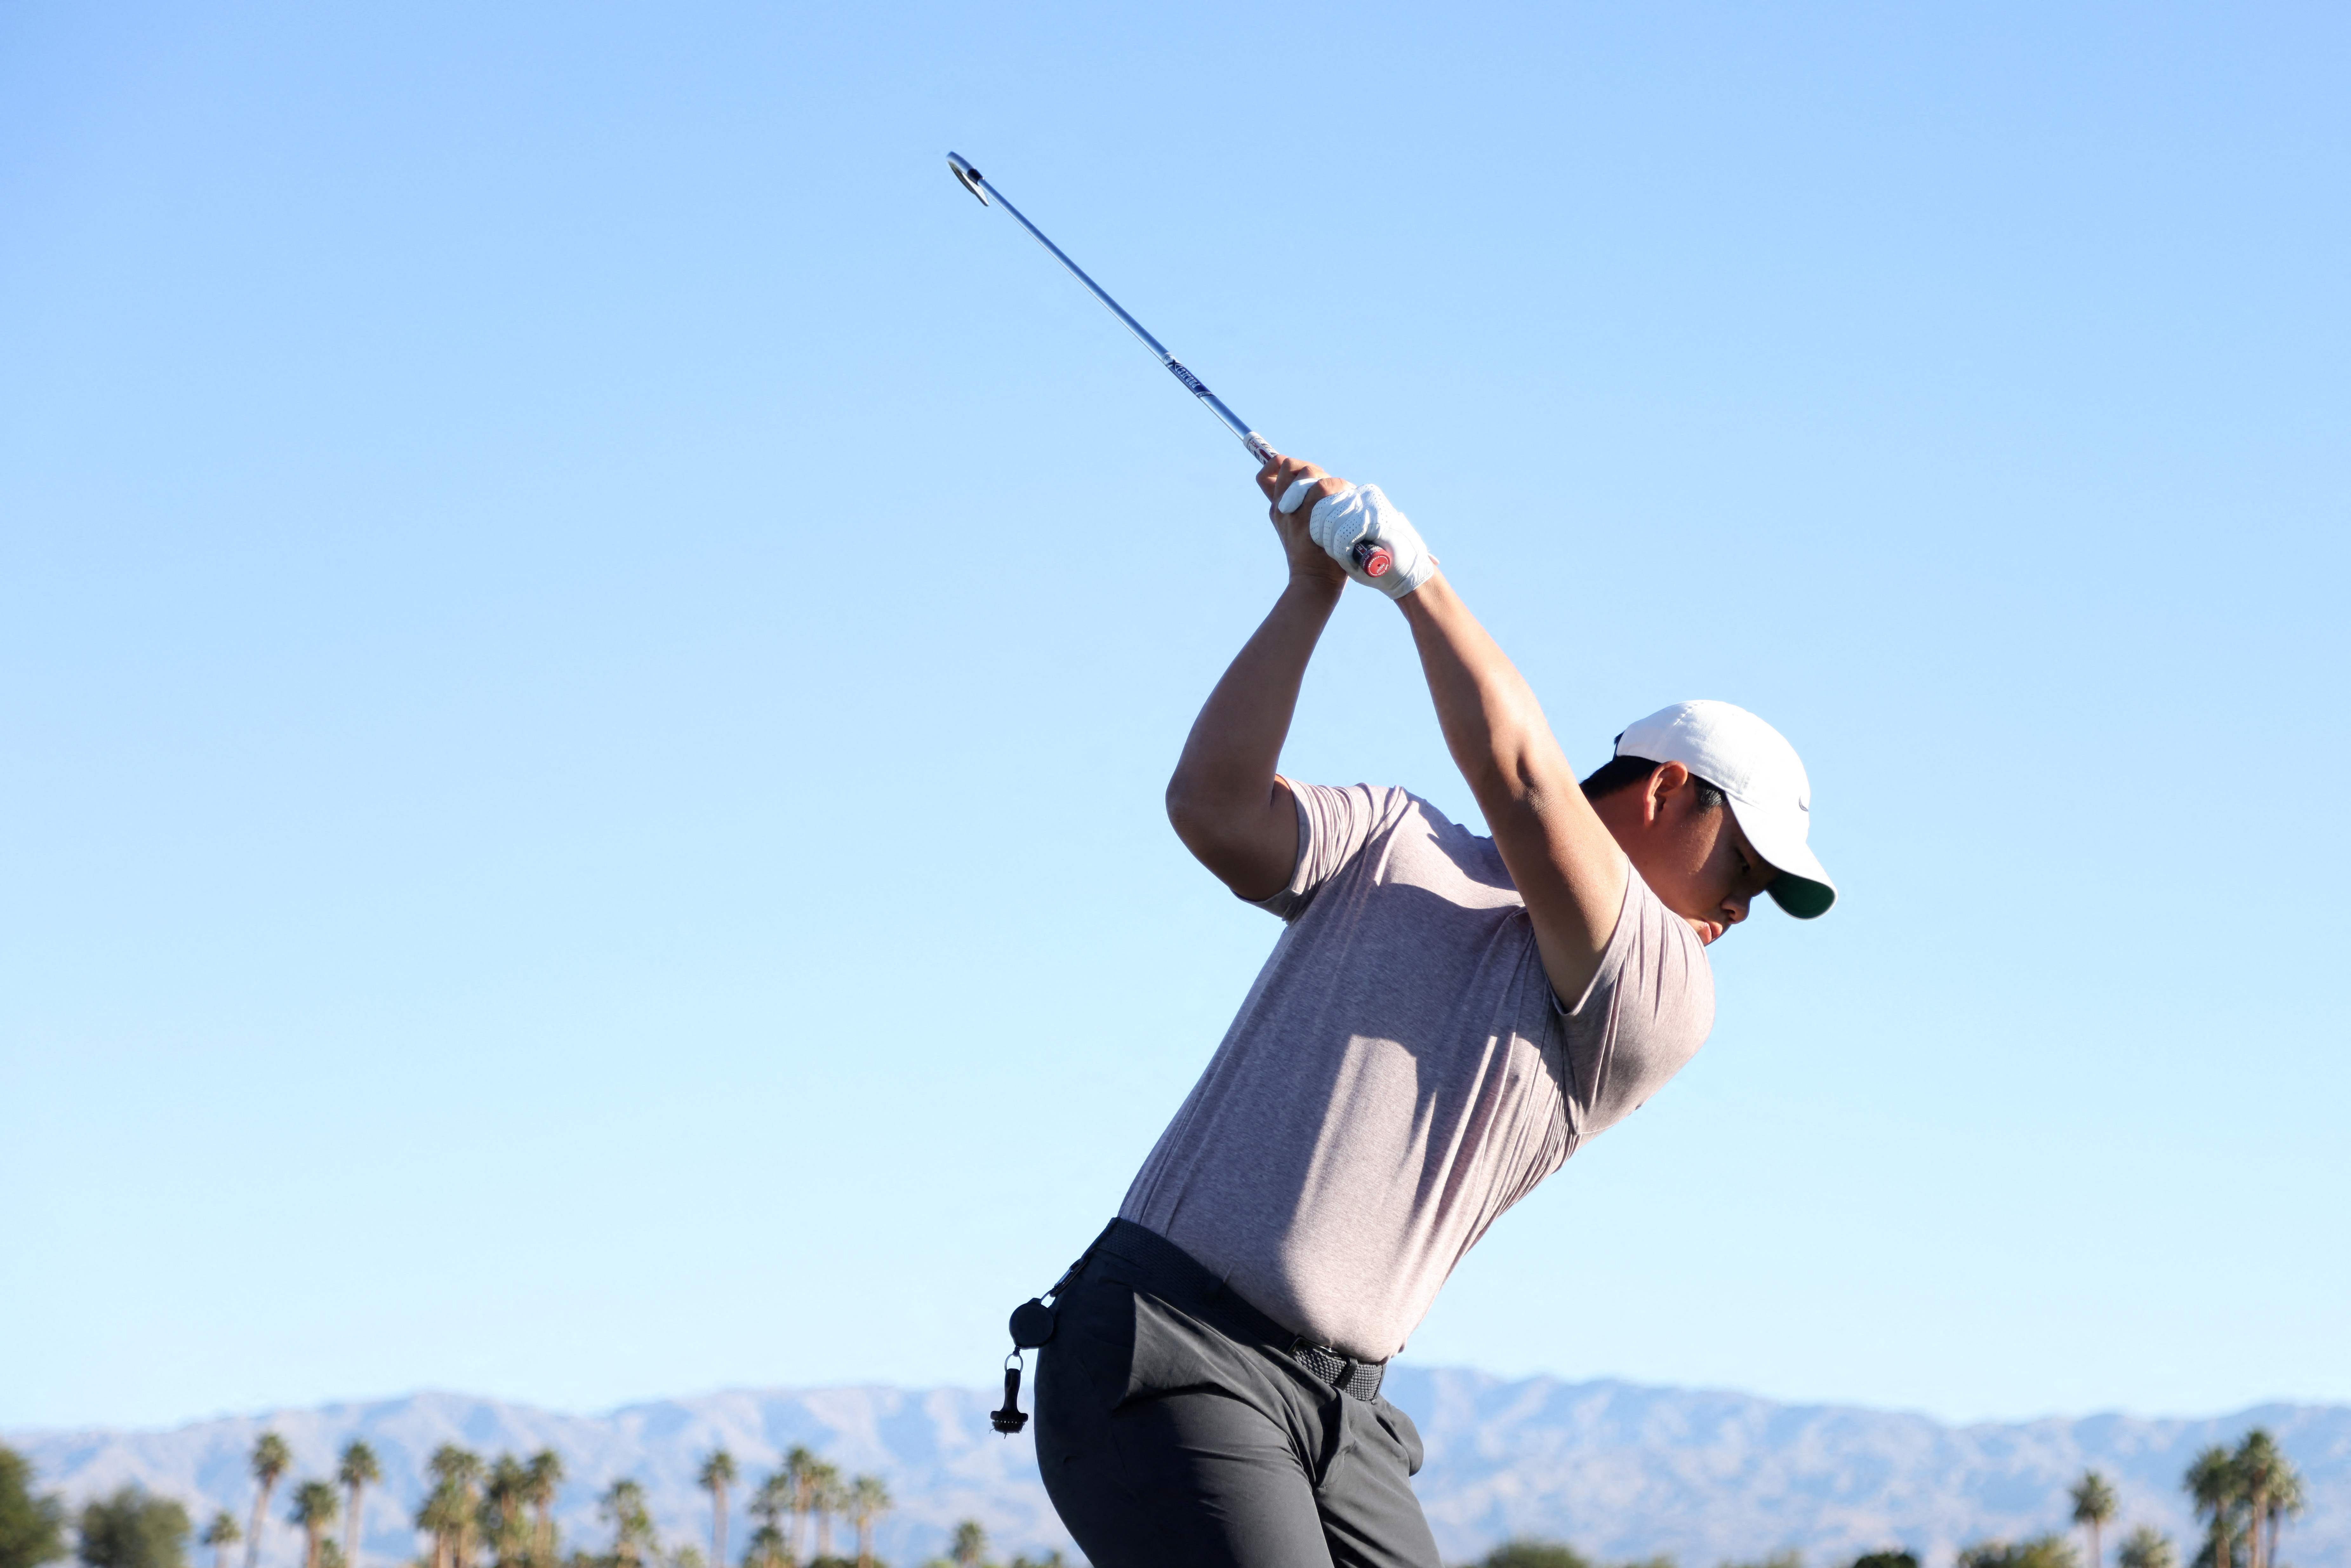 김주형이 21일(한국시간) 열린 PGA 투어 아메리칸 익스프레스 2라운드에서 웨스트 니클라우스 토너먼트 코스 에서 경기를 치르며 티샷을 날리고 있다. AFP 연합뉴스